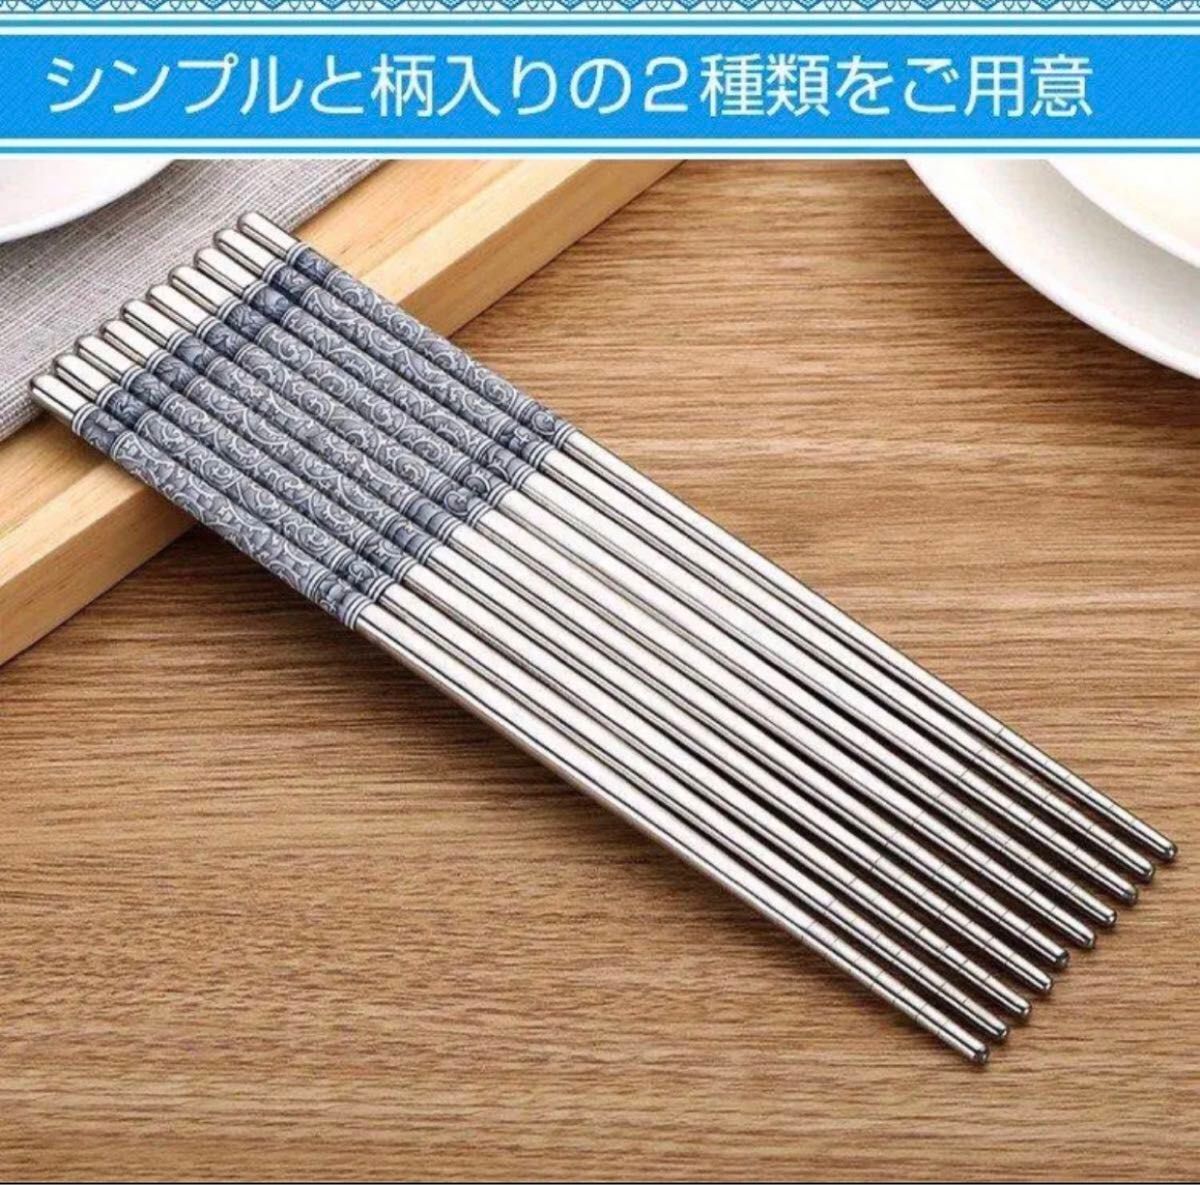 箸 ステンレス 耐久性 丈夫 耐熱 オシャレ 経済的 衛生的 キッチン 食事